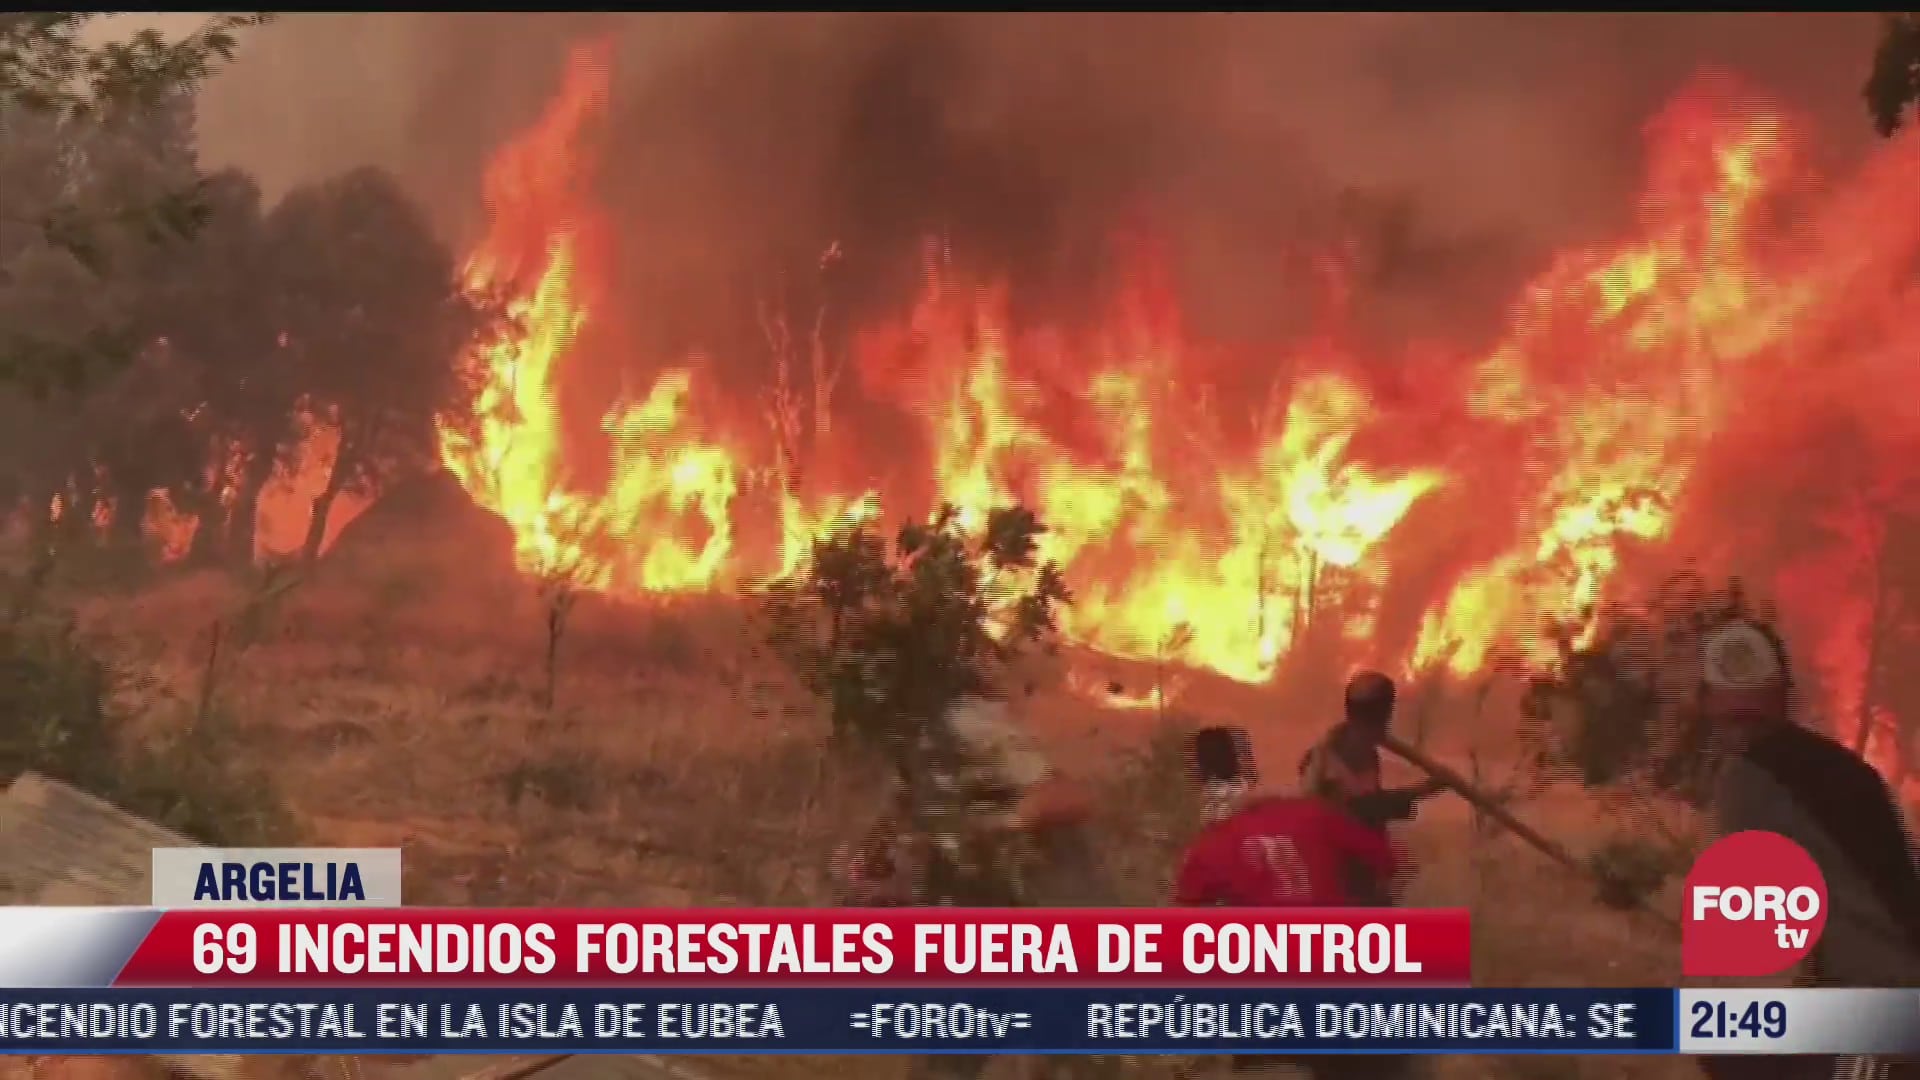 alrededor de 69 incendios forestales en argelia estan fuera de control